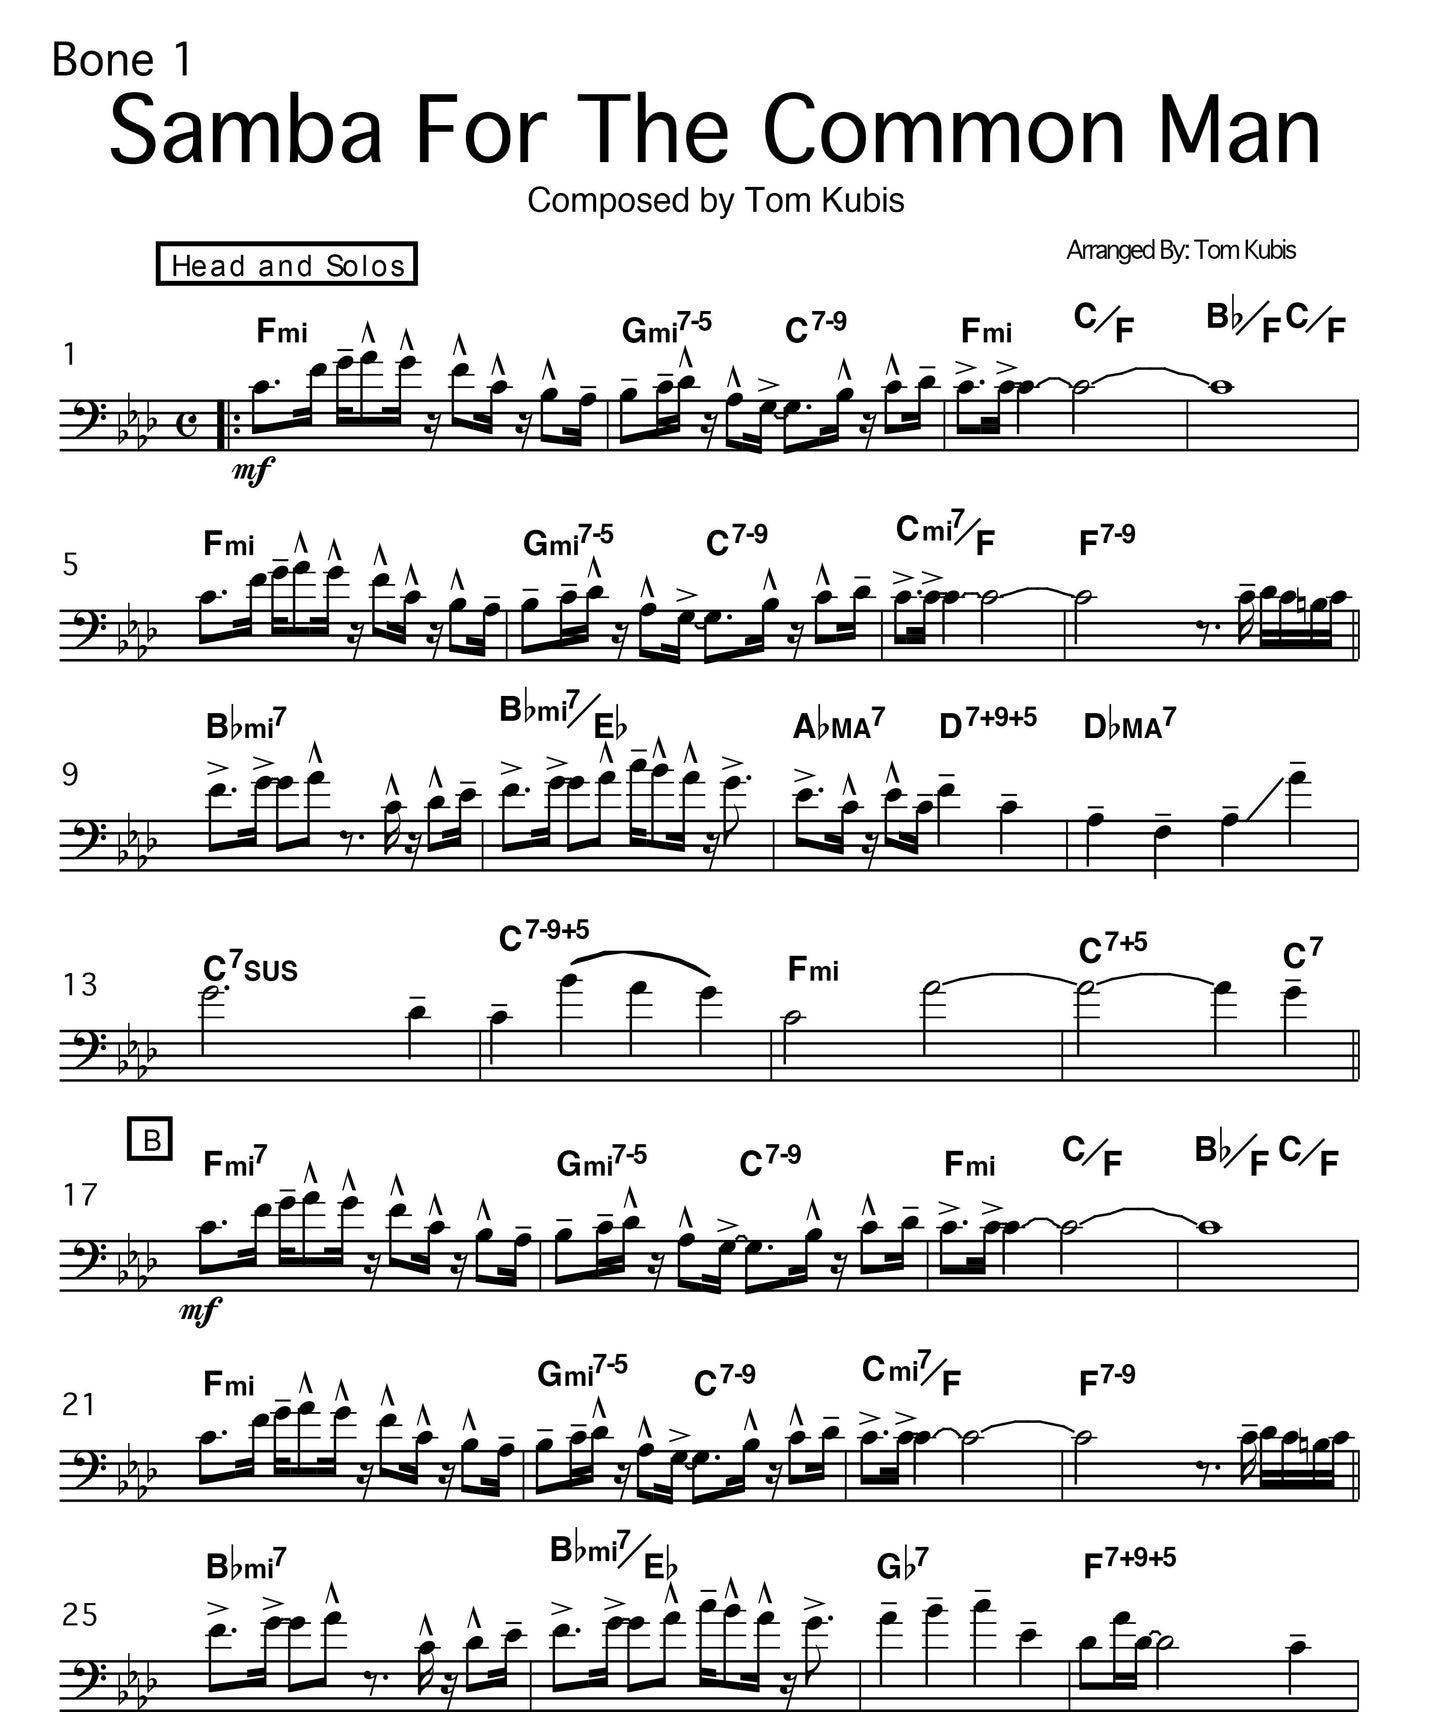 Samba for tthe Common Man